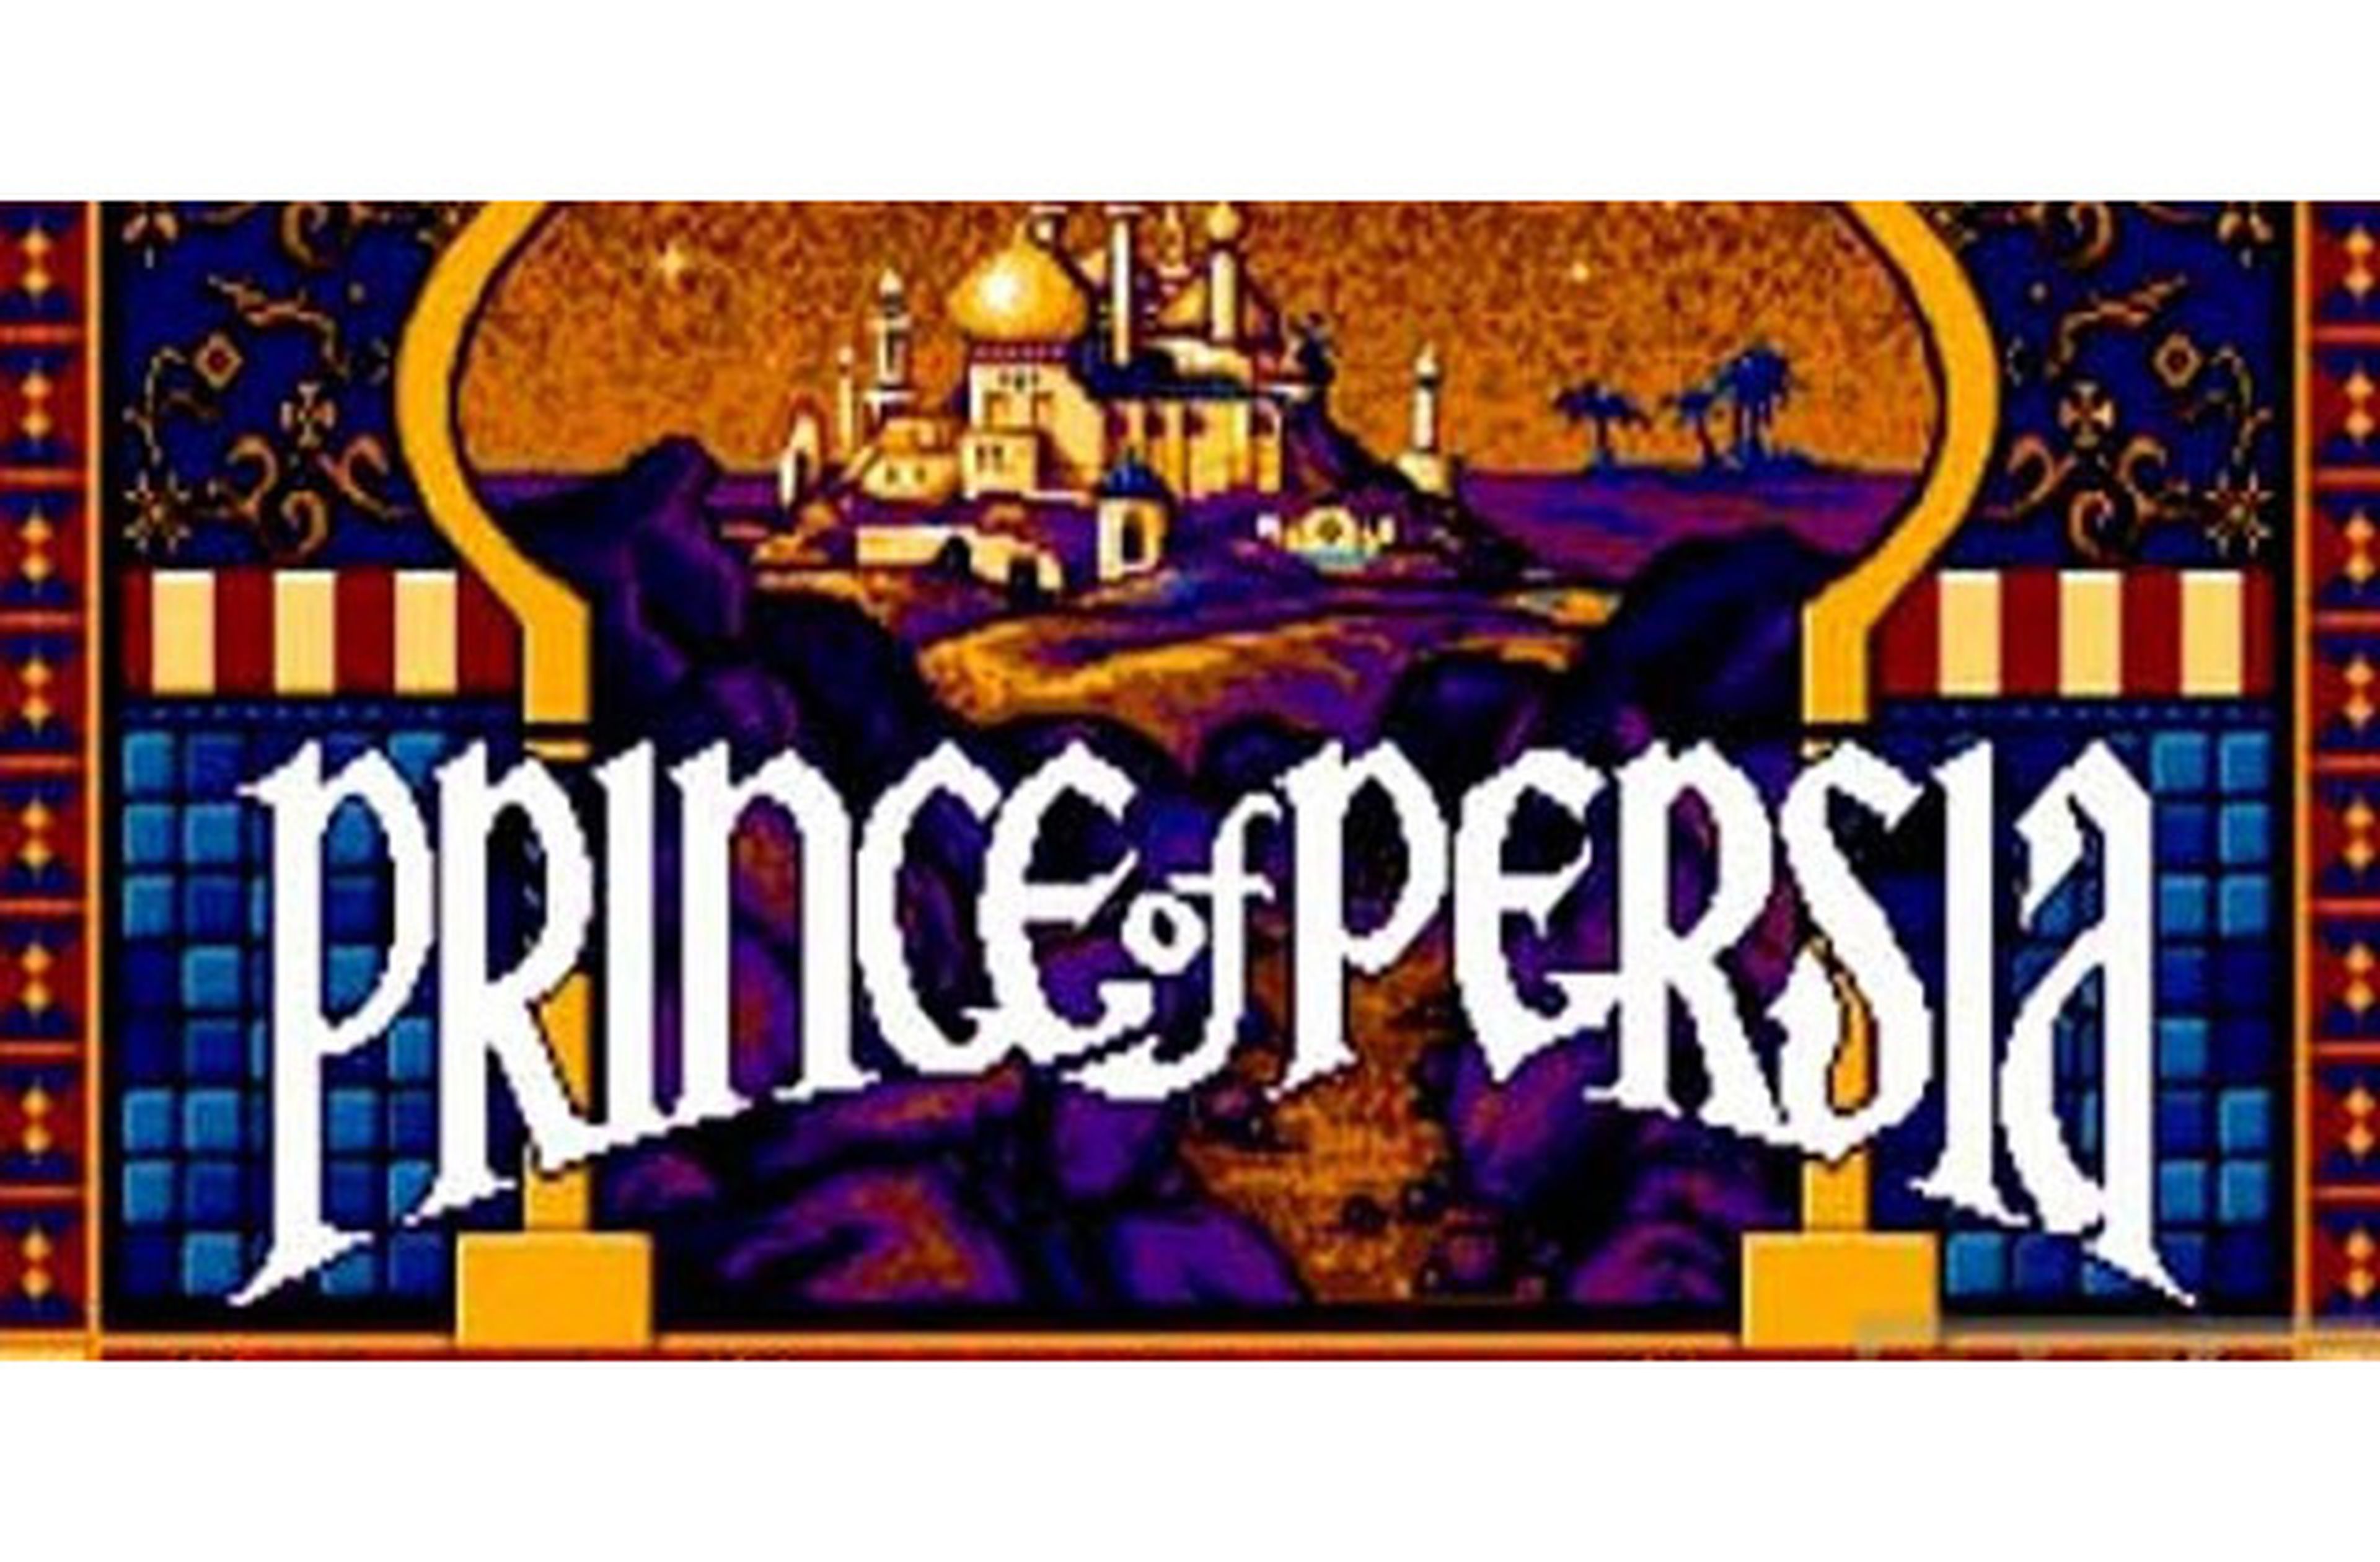 Prince of Persia. El mejor videojuego de aventuras.